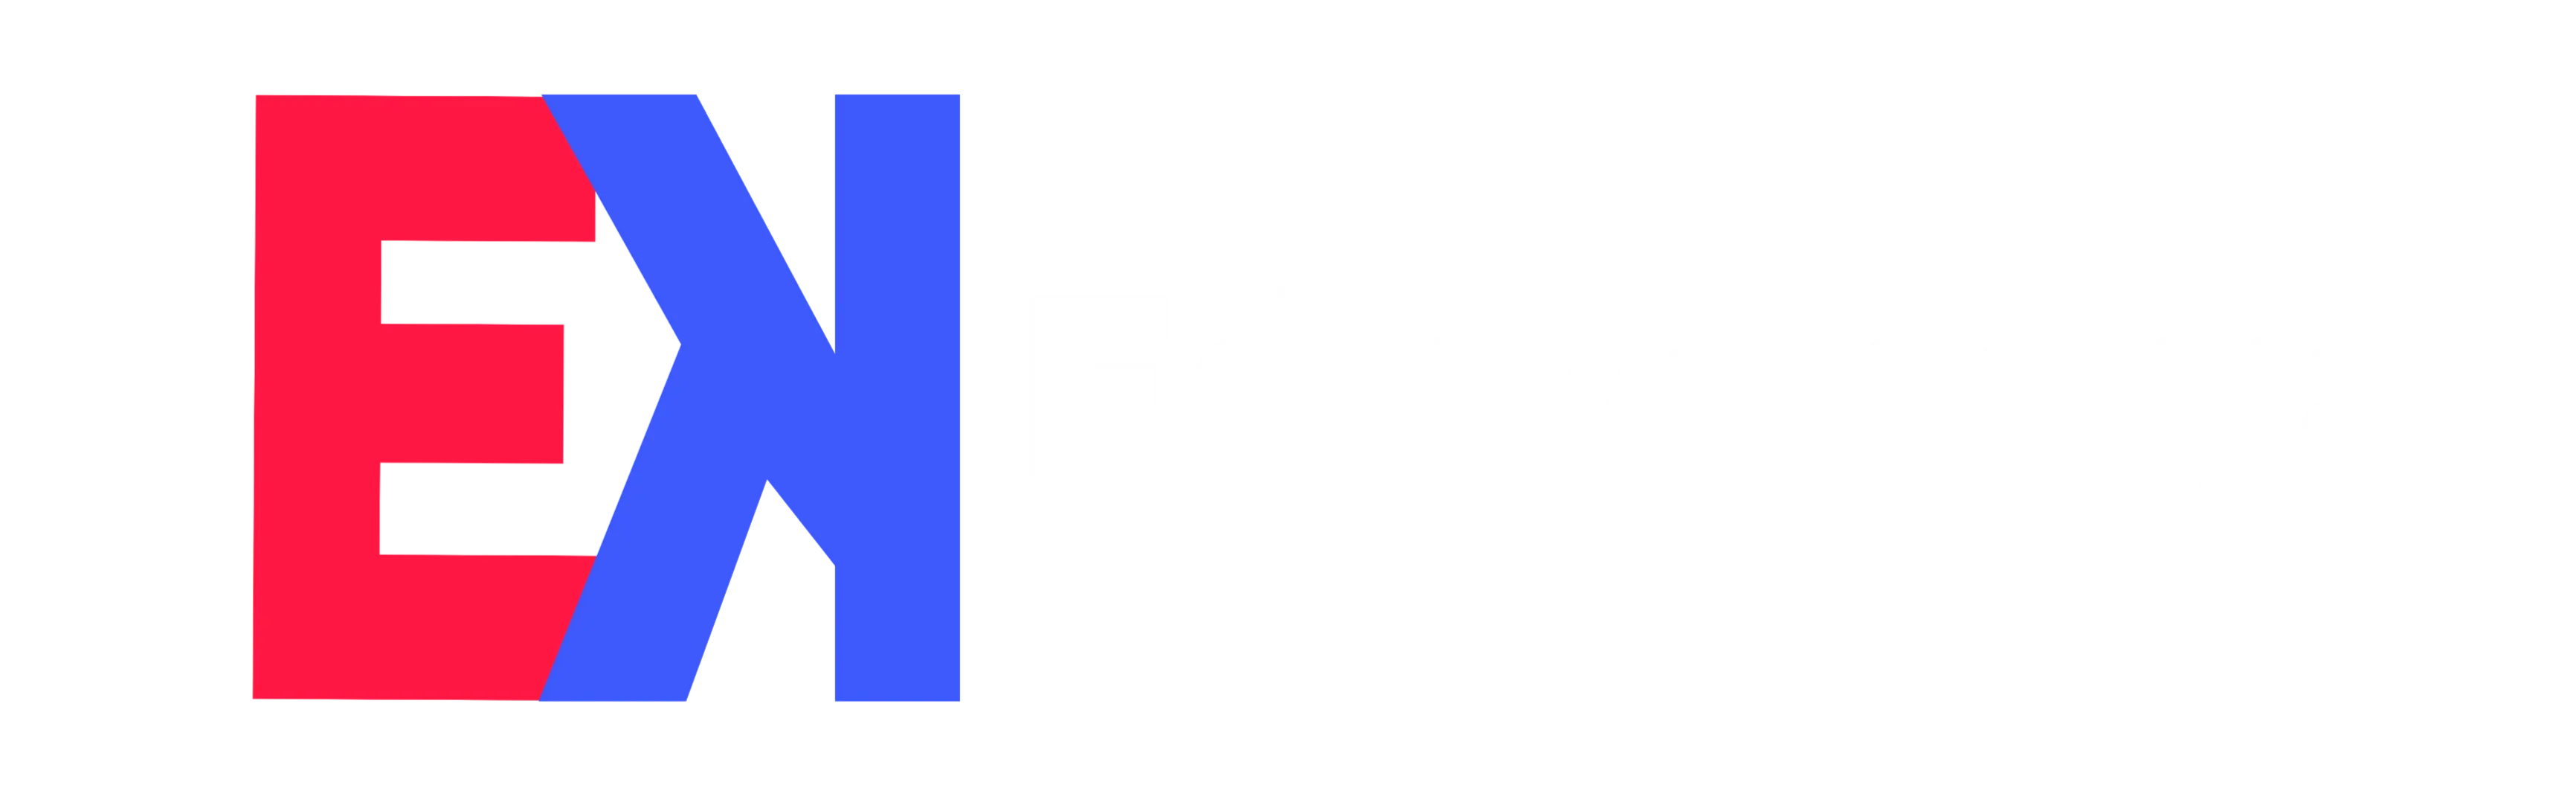 E K EduKarniya Logo